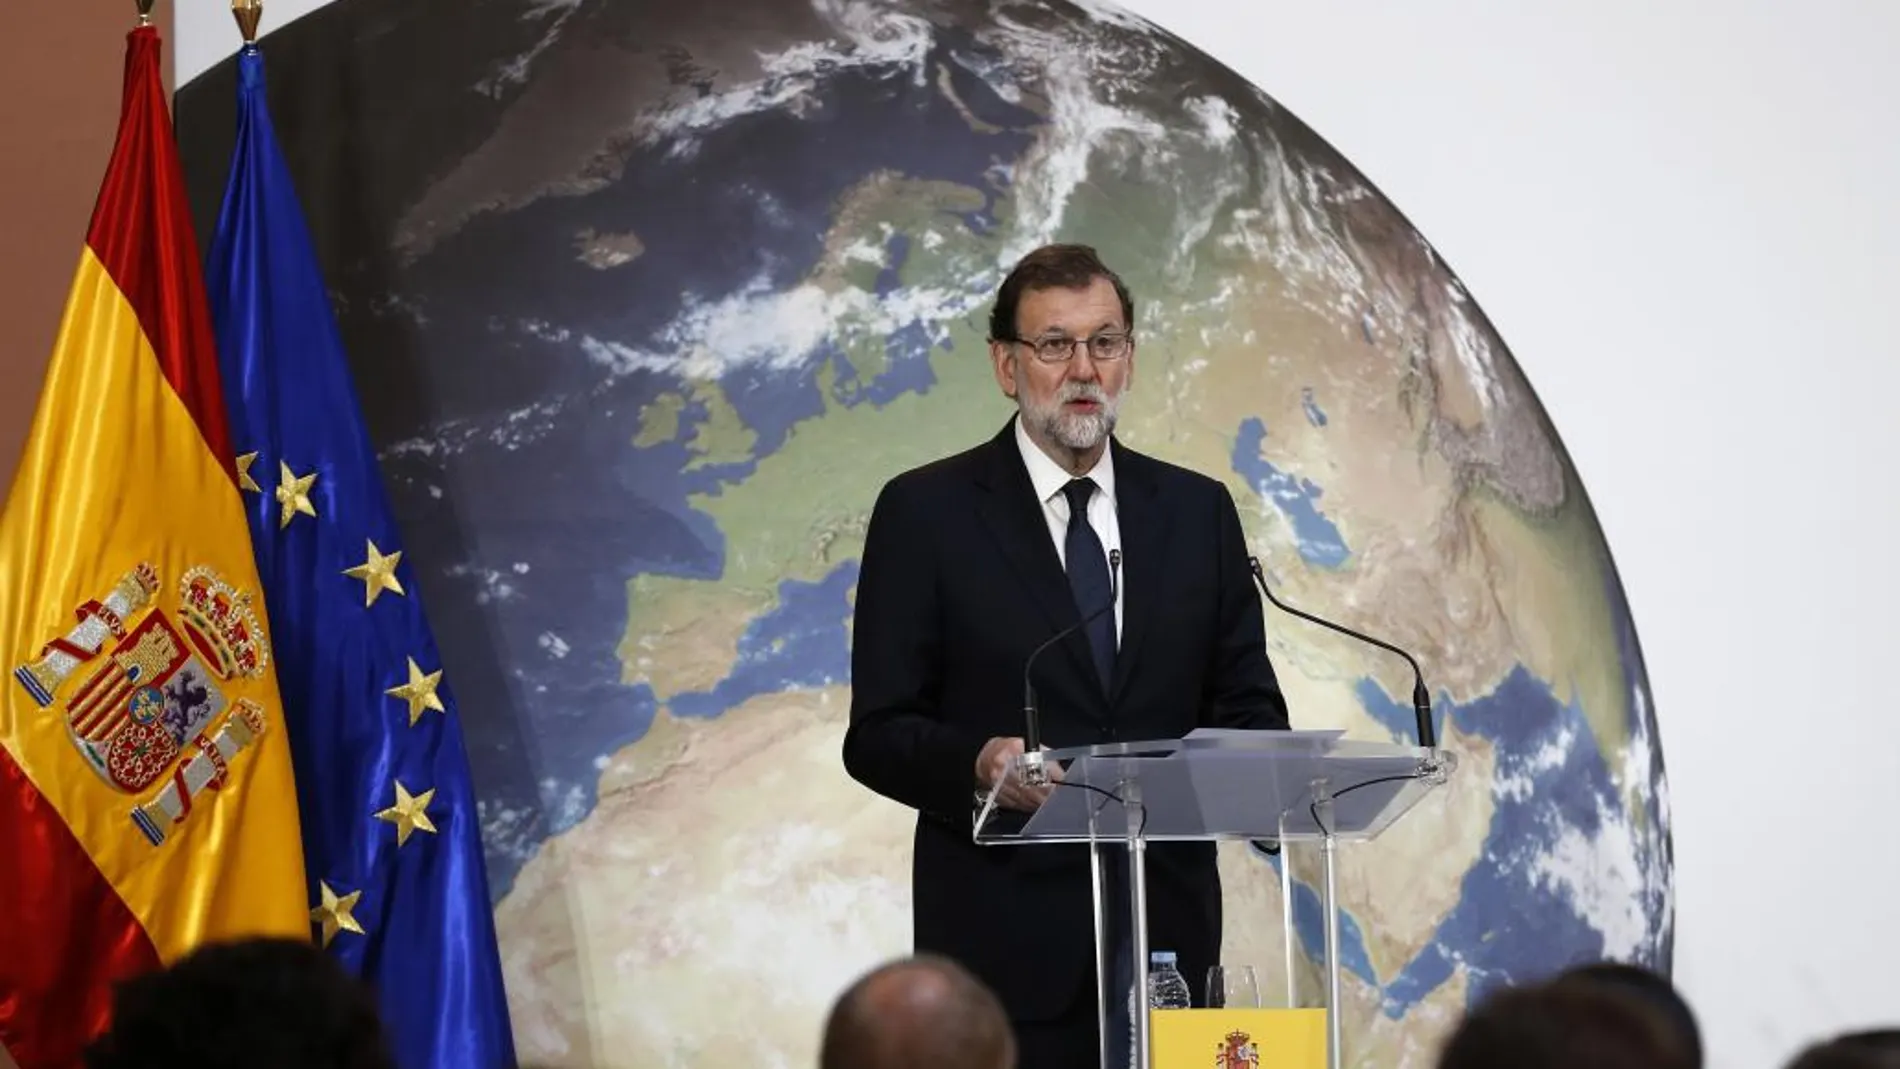 El presidente del Gobierno,Mariano Rajoy, en la inauguración de dos jornadas de debate para consensuar con la sociedad civil la regulación que se va a desarrollar para cumplir con los compromisos asumidos en el Acuerdo de lucha contra el cambio climático de París.